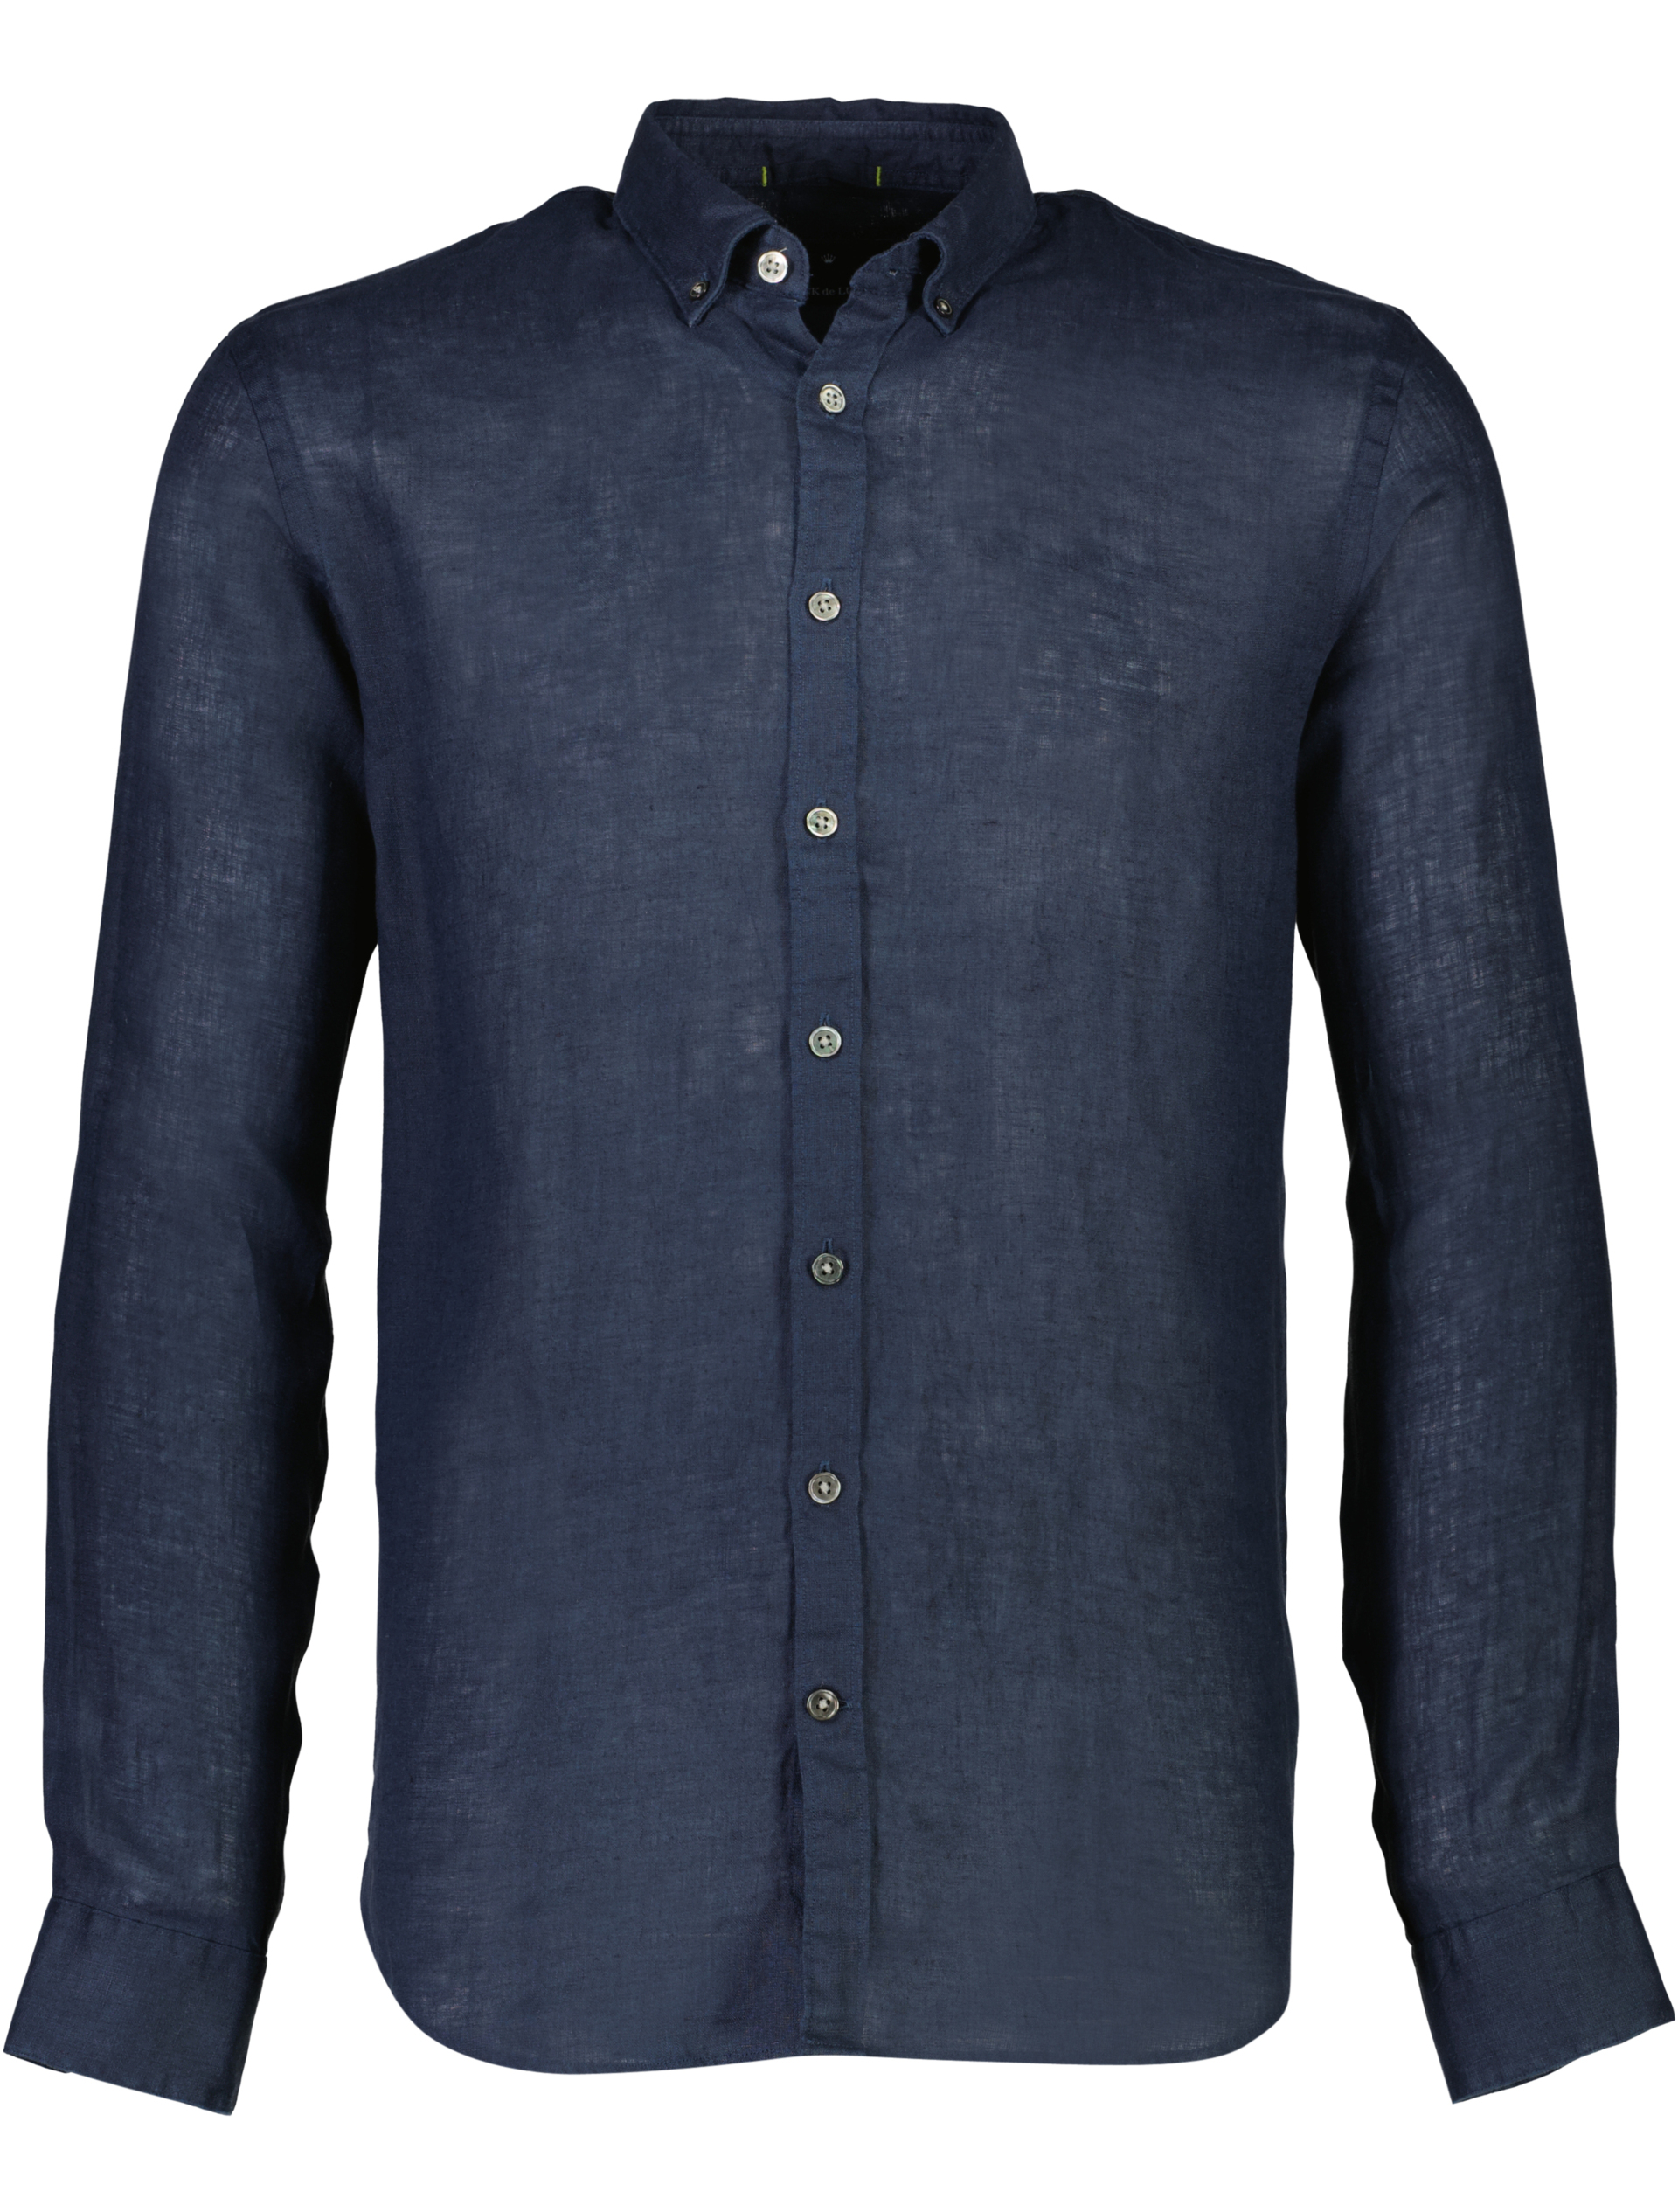 Junk de Luxe Linen shirt blue / navy